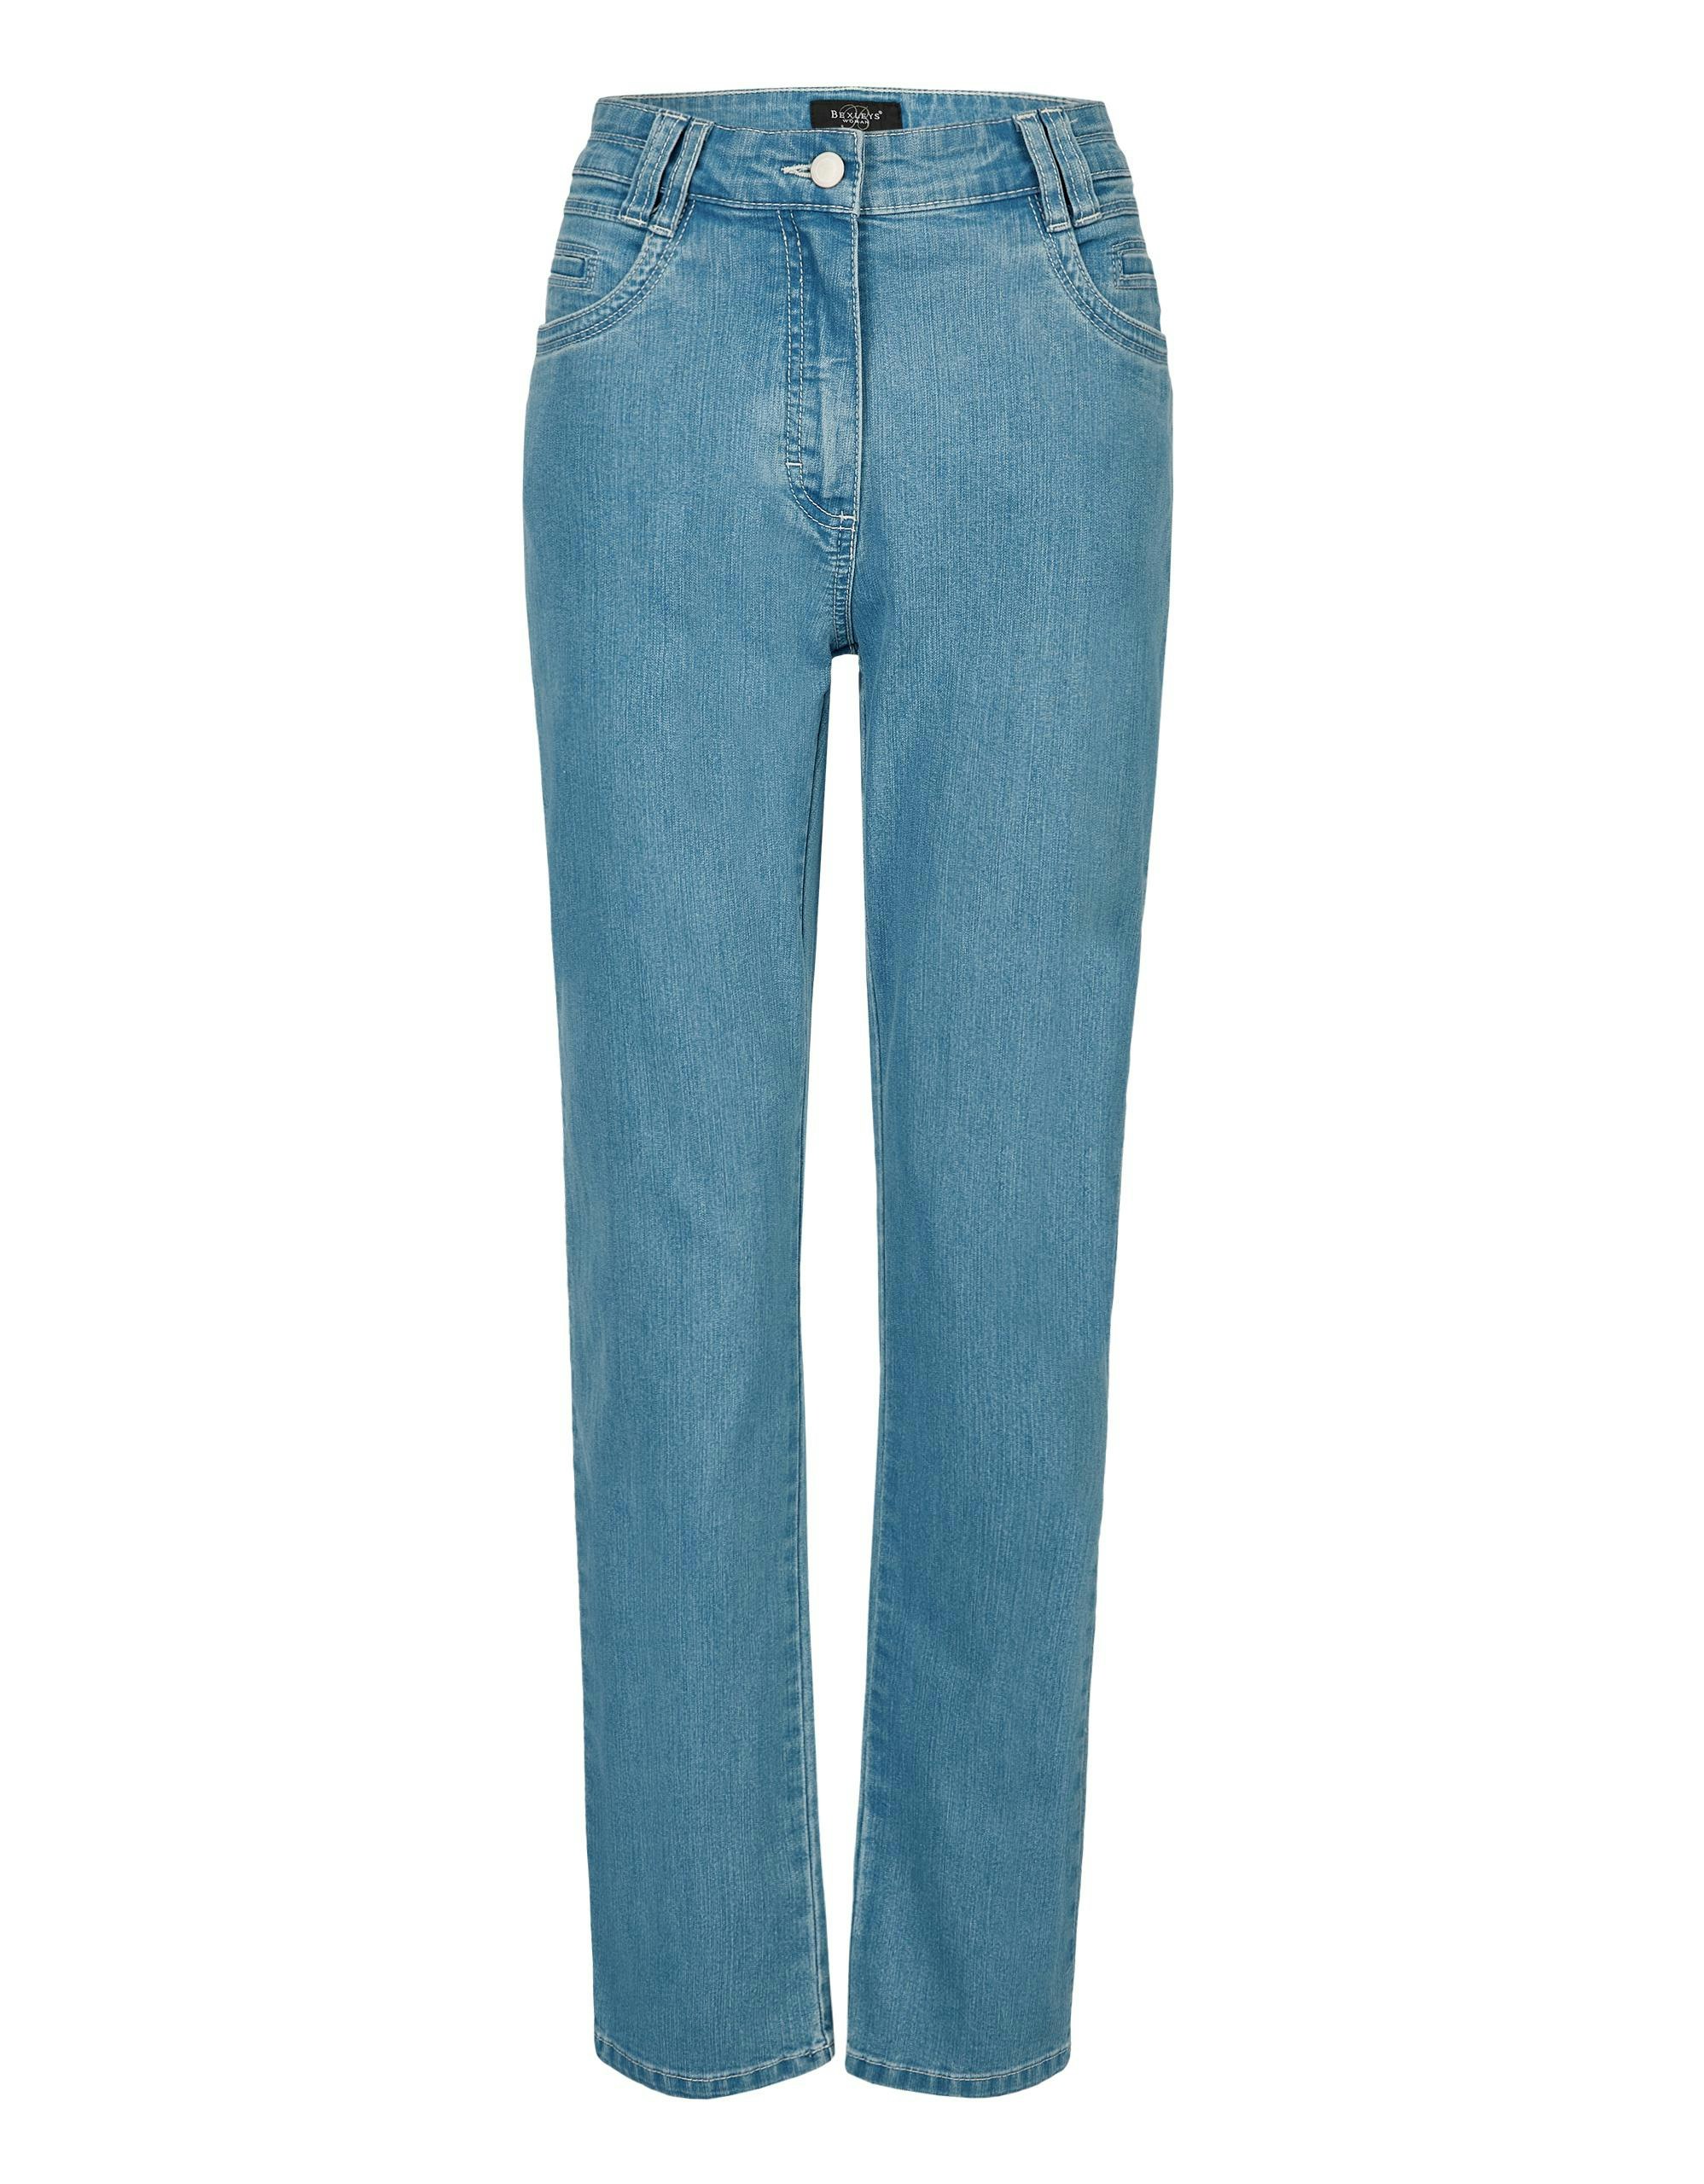 Rabatt 88 % Primark Jeans Blau 4Y KINDER Hosen Stickerei 